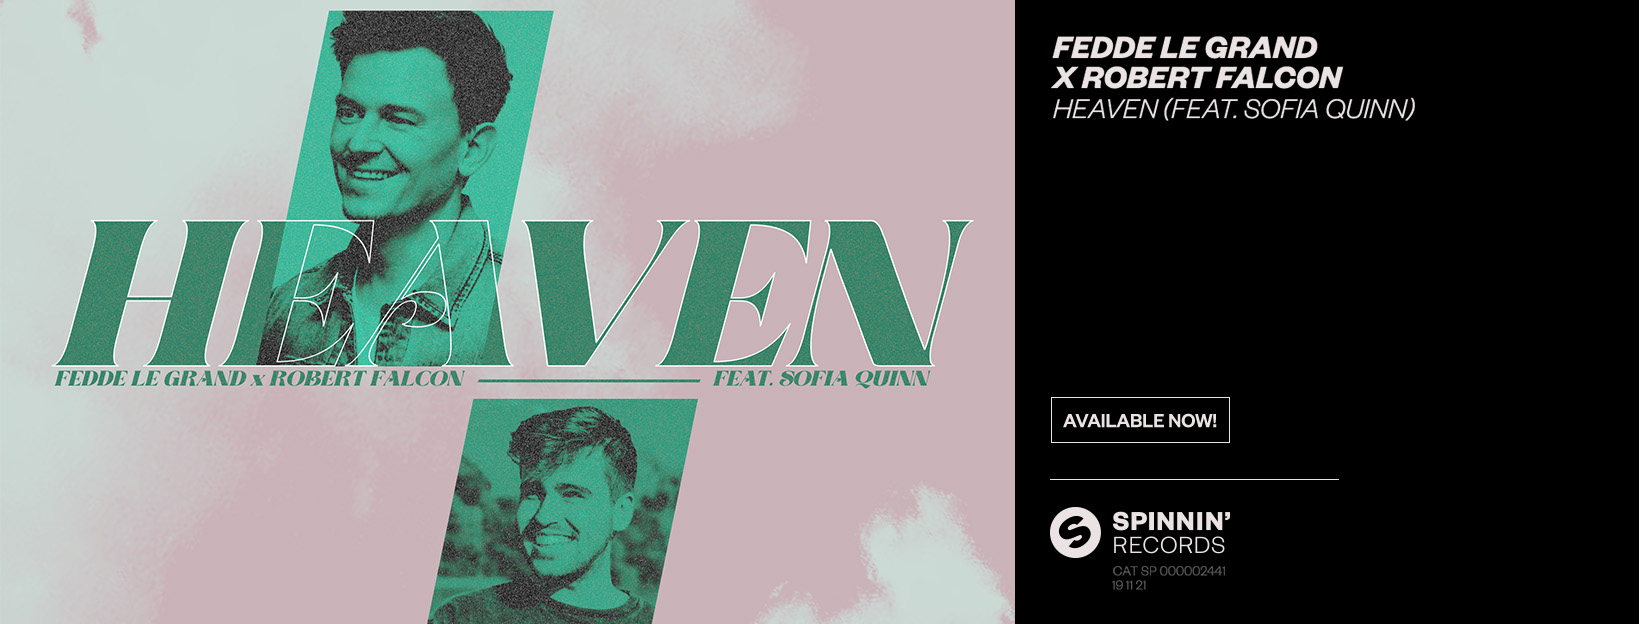 Fedde Le Grand x Robert Falcon - Heaven (feat. Sofia Quinn)